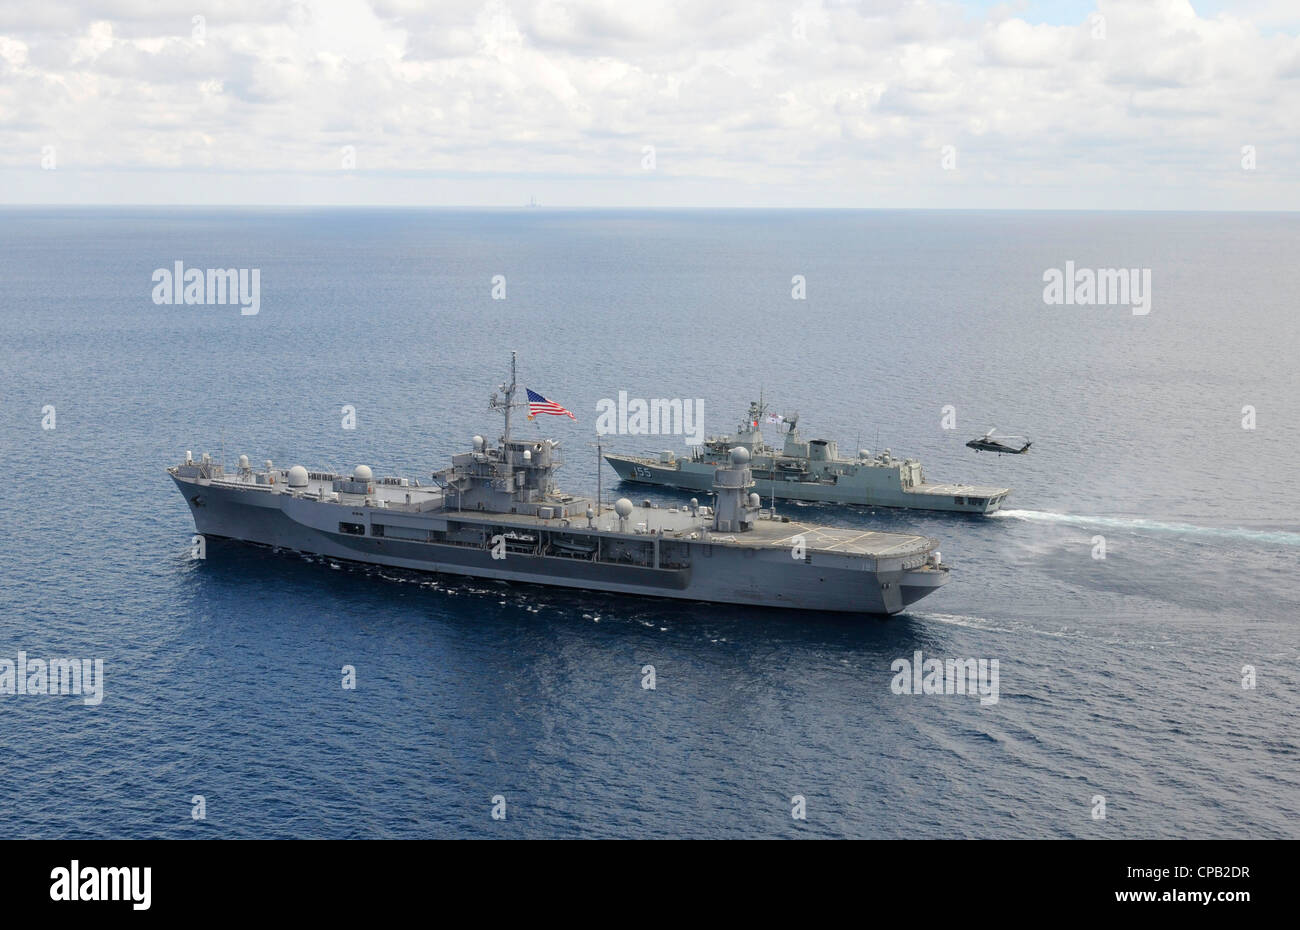 Den USA 7. Flotte Flaggschiff USS Blue Ridge (LCC-19), vorne, und die Royal Australian Navy Fregatte HMAS Ballarat (FF 155) transit das Südchinesische Meer. Stockfoto